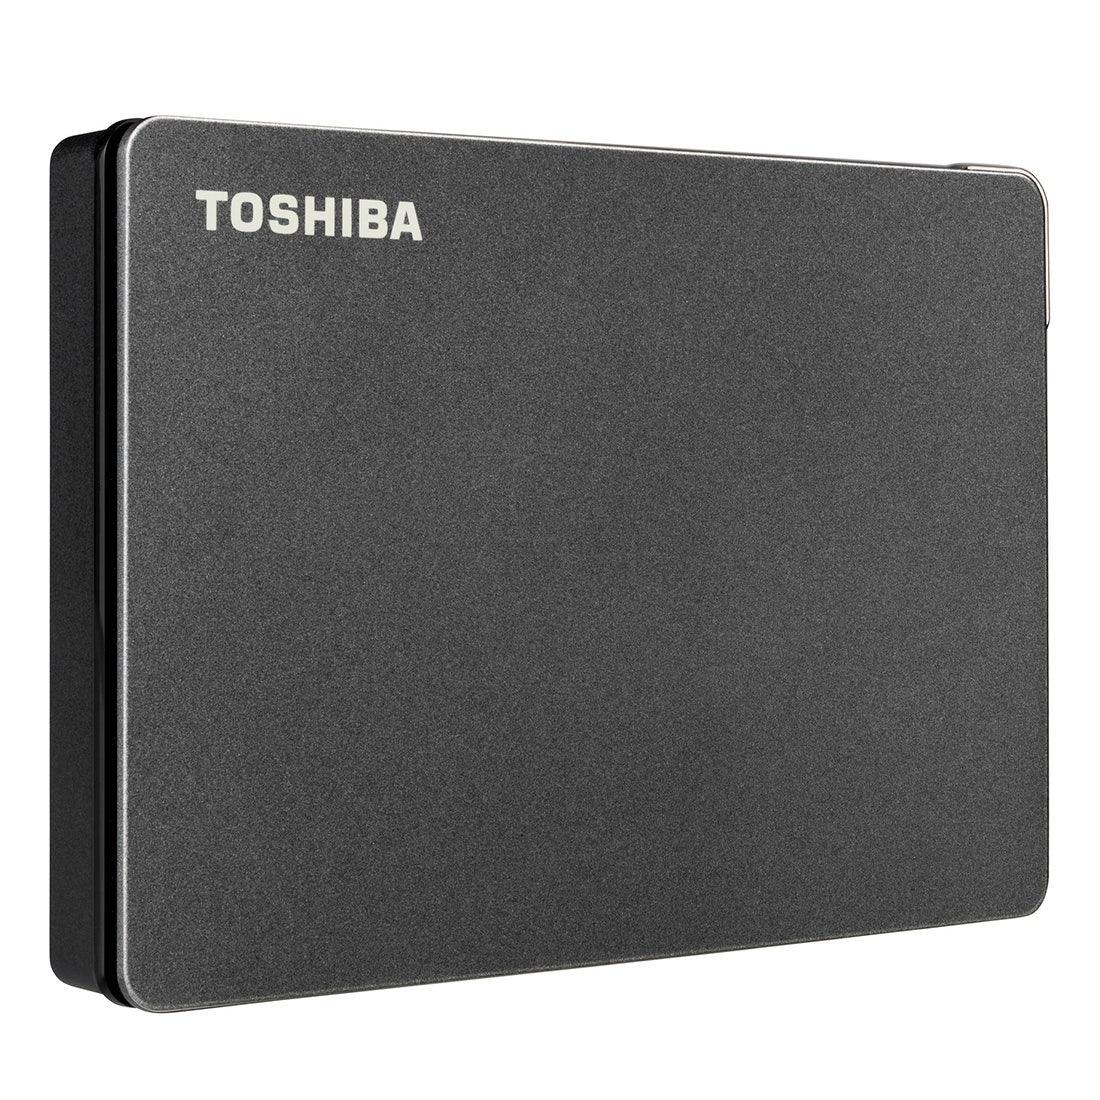 HD Externo Toshiba 2TB Canvio Gaming Preto - HDTX120XK3AA I - Mega Market